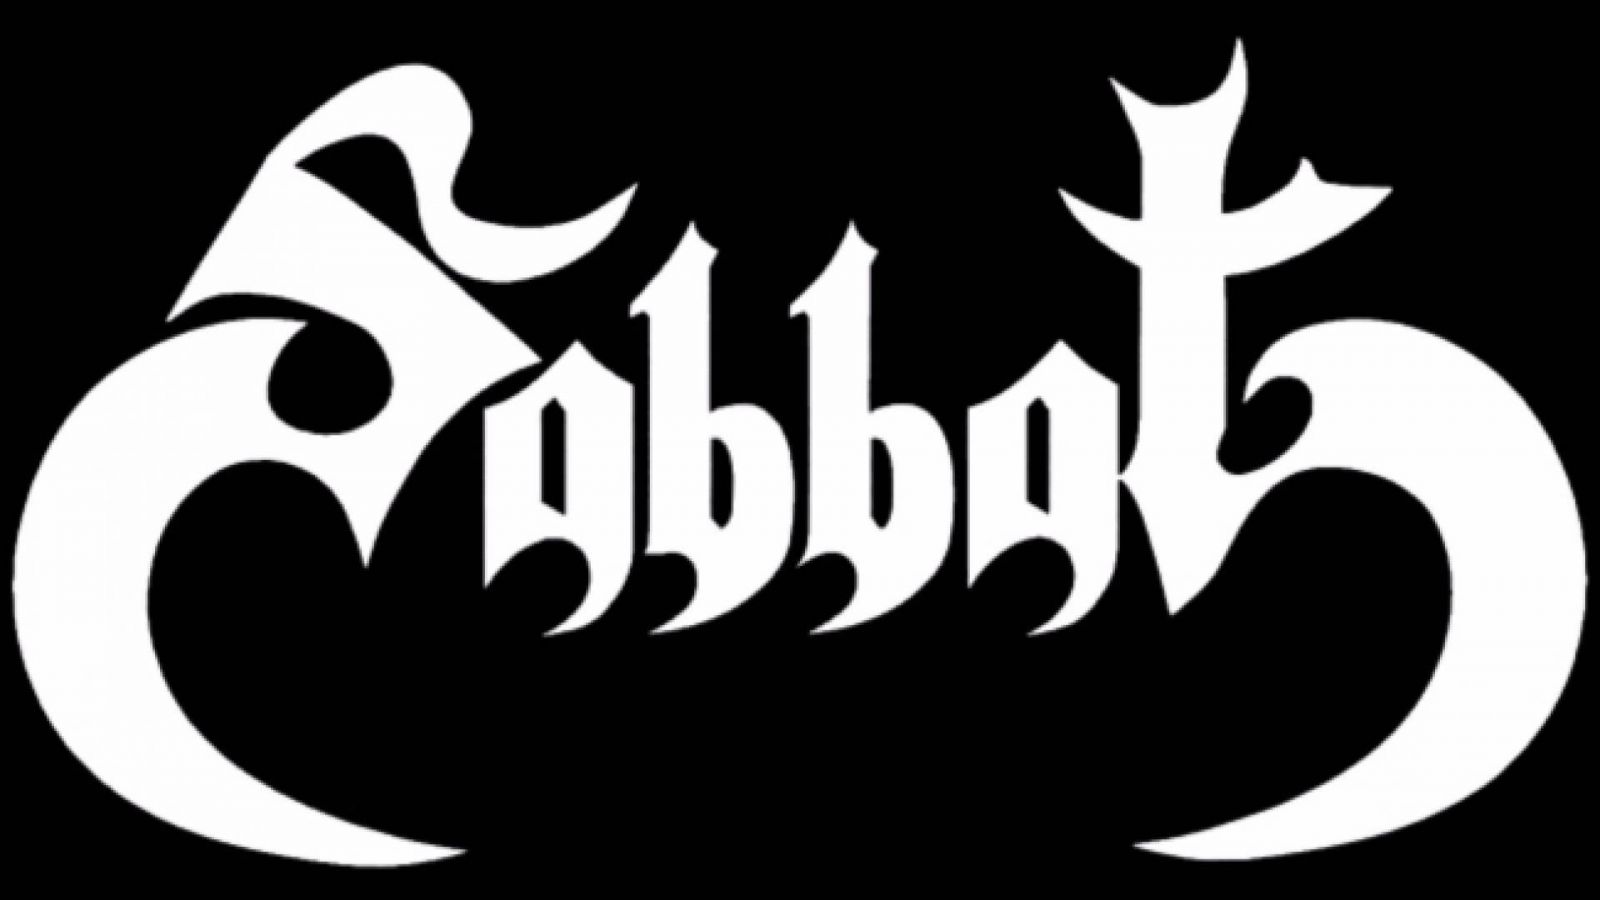 Kansainväliset bändit kunnioittavat Sabbatia tribuuttialbumilla © Sabbat. All Rights Reserved.